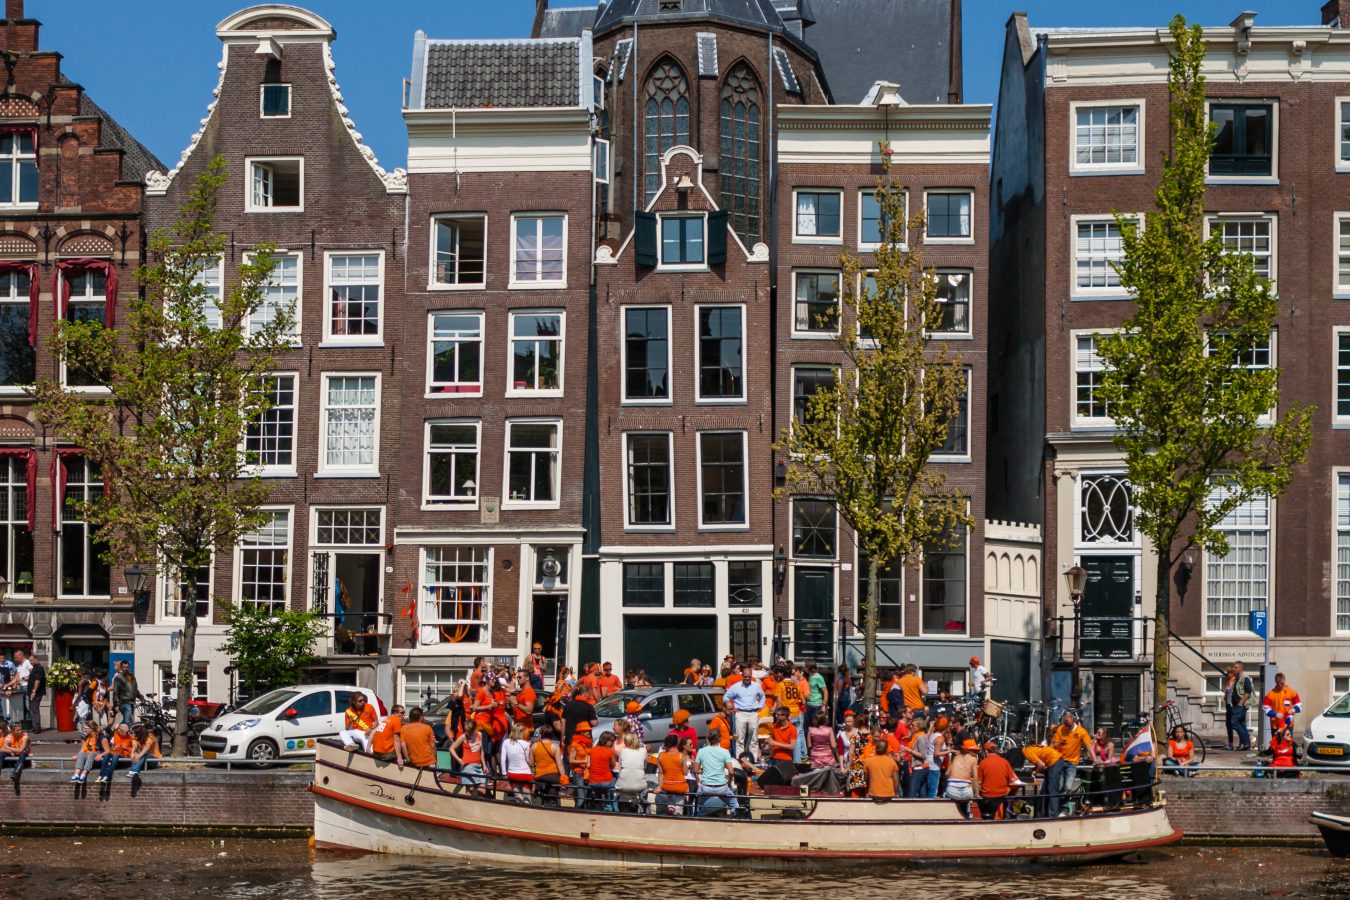 boat full of orange-dressed people celebrating kings day in amsterdam april 27